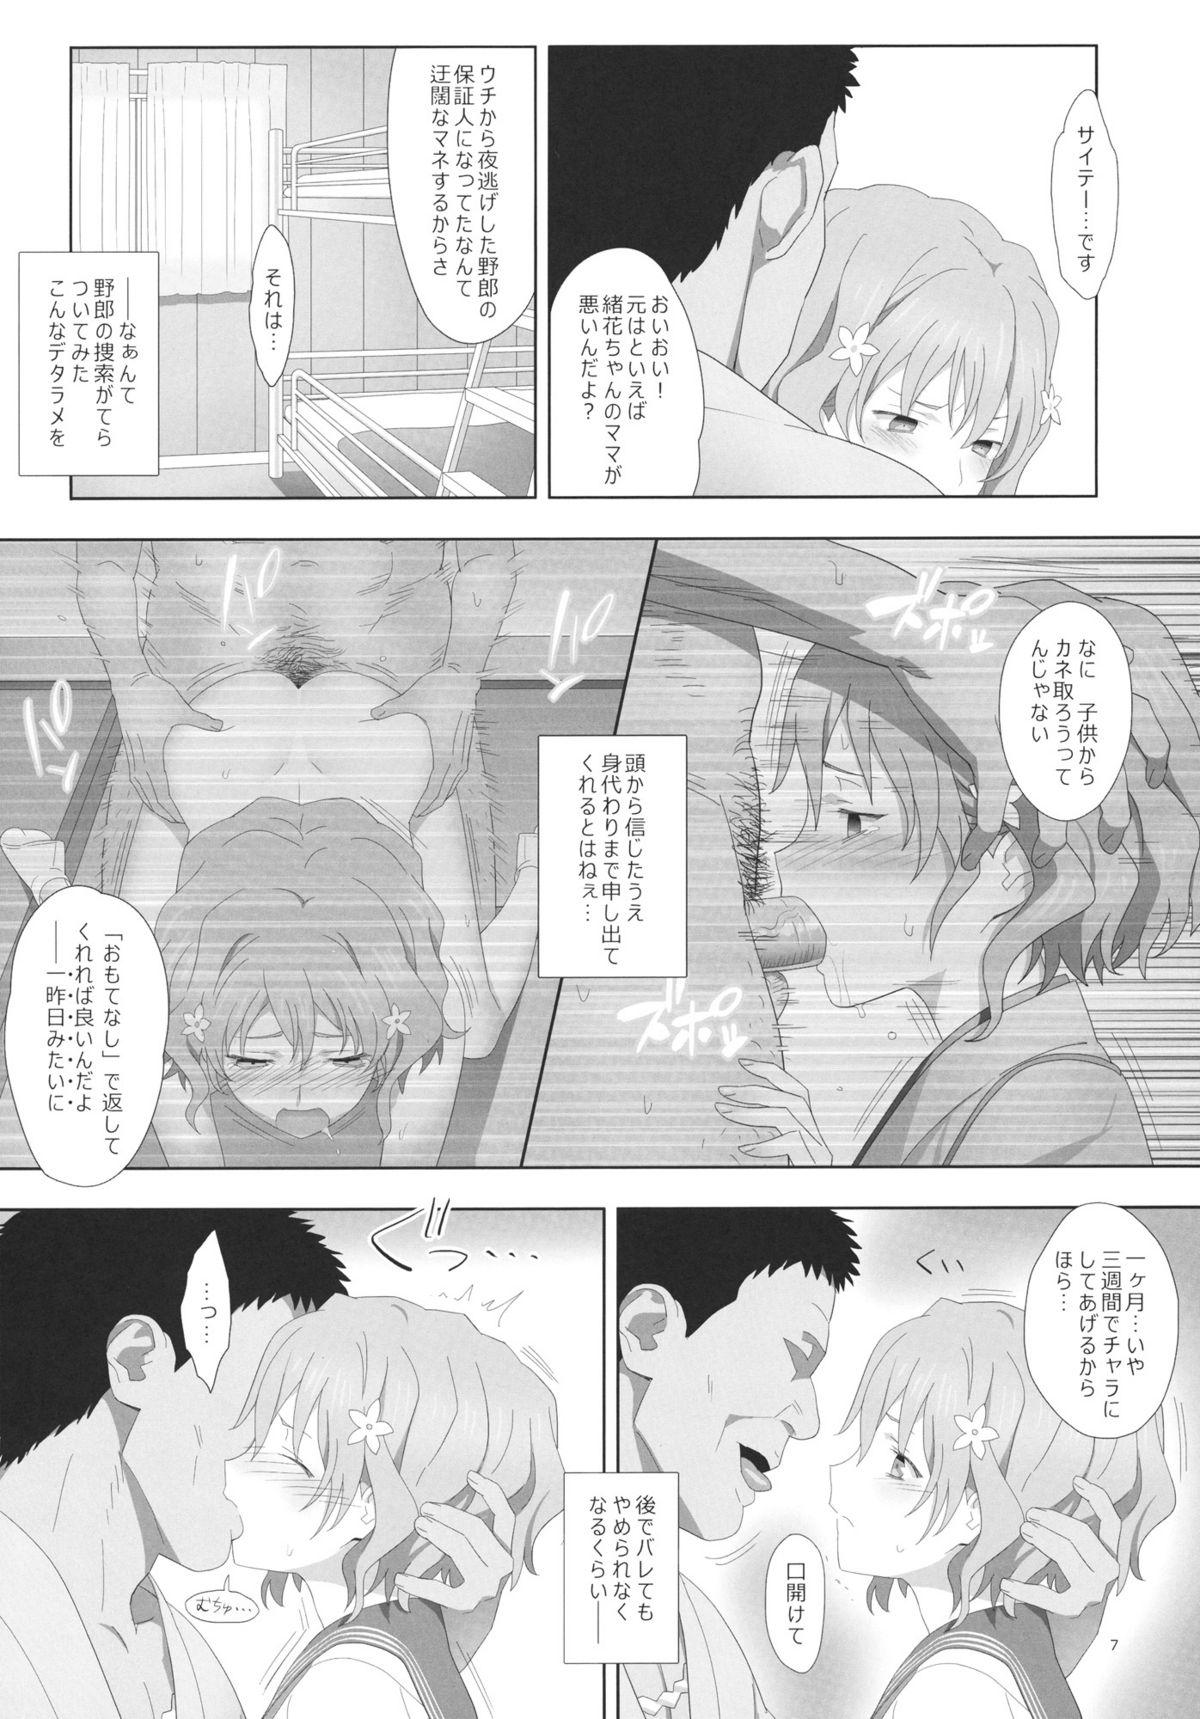 Swinger Natsu, Ryokan, Shakkintori. - Hanasaku iroha High - Page 6